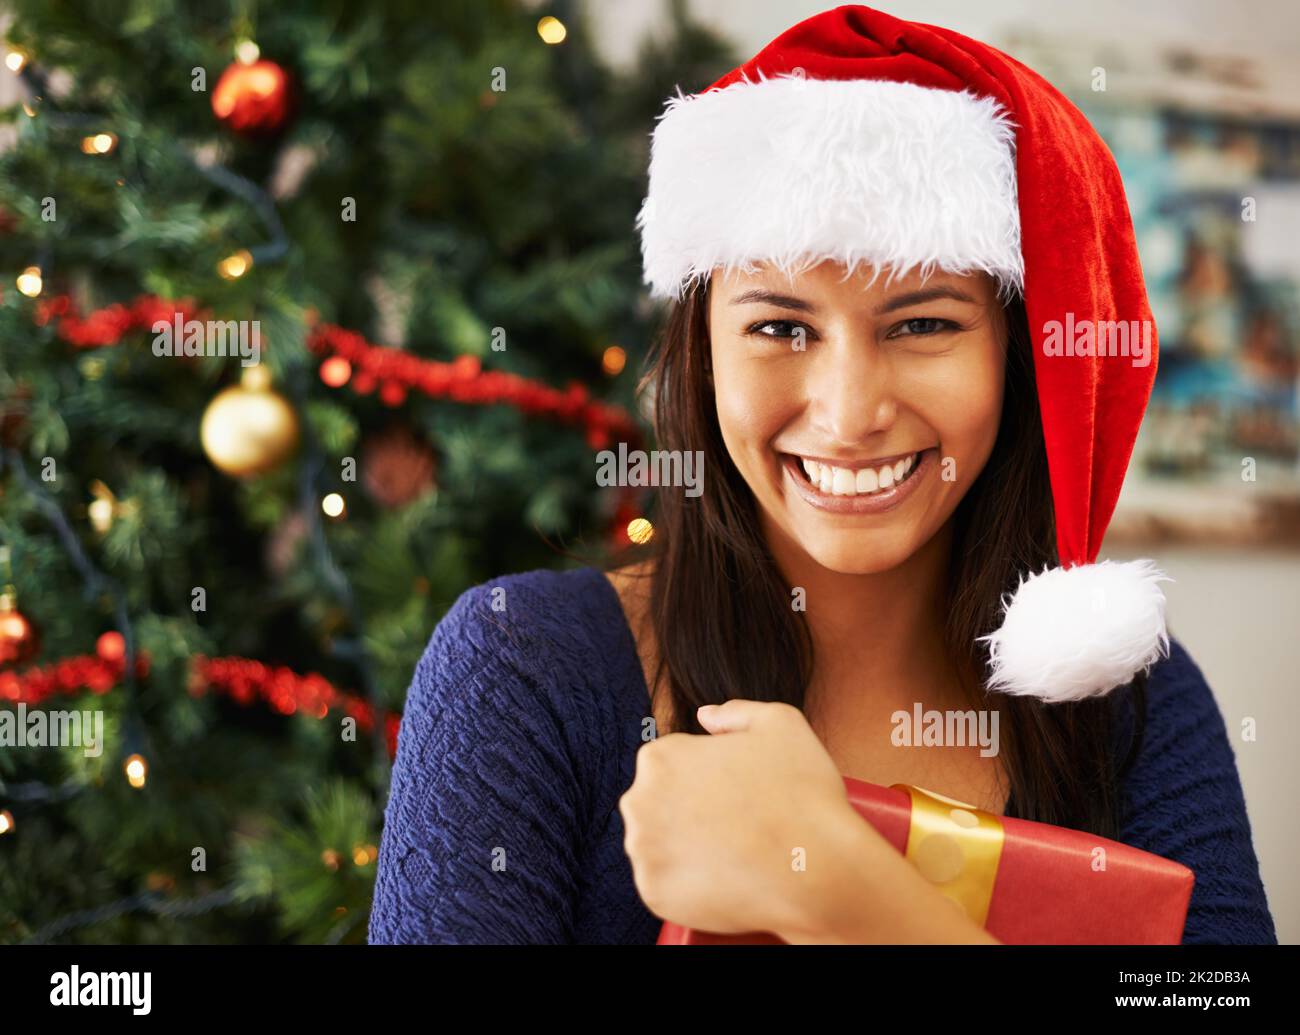 Devo aprirne uno ora. Ritratto di una giovane donna tenere un regalo di Natale. Foto Stock